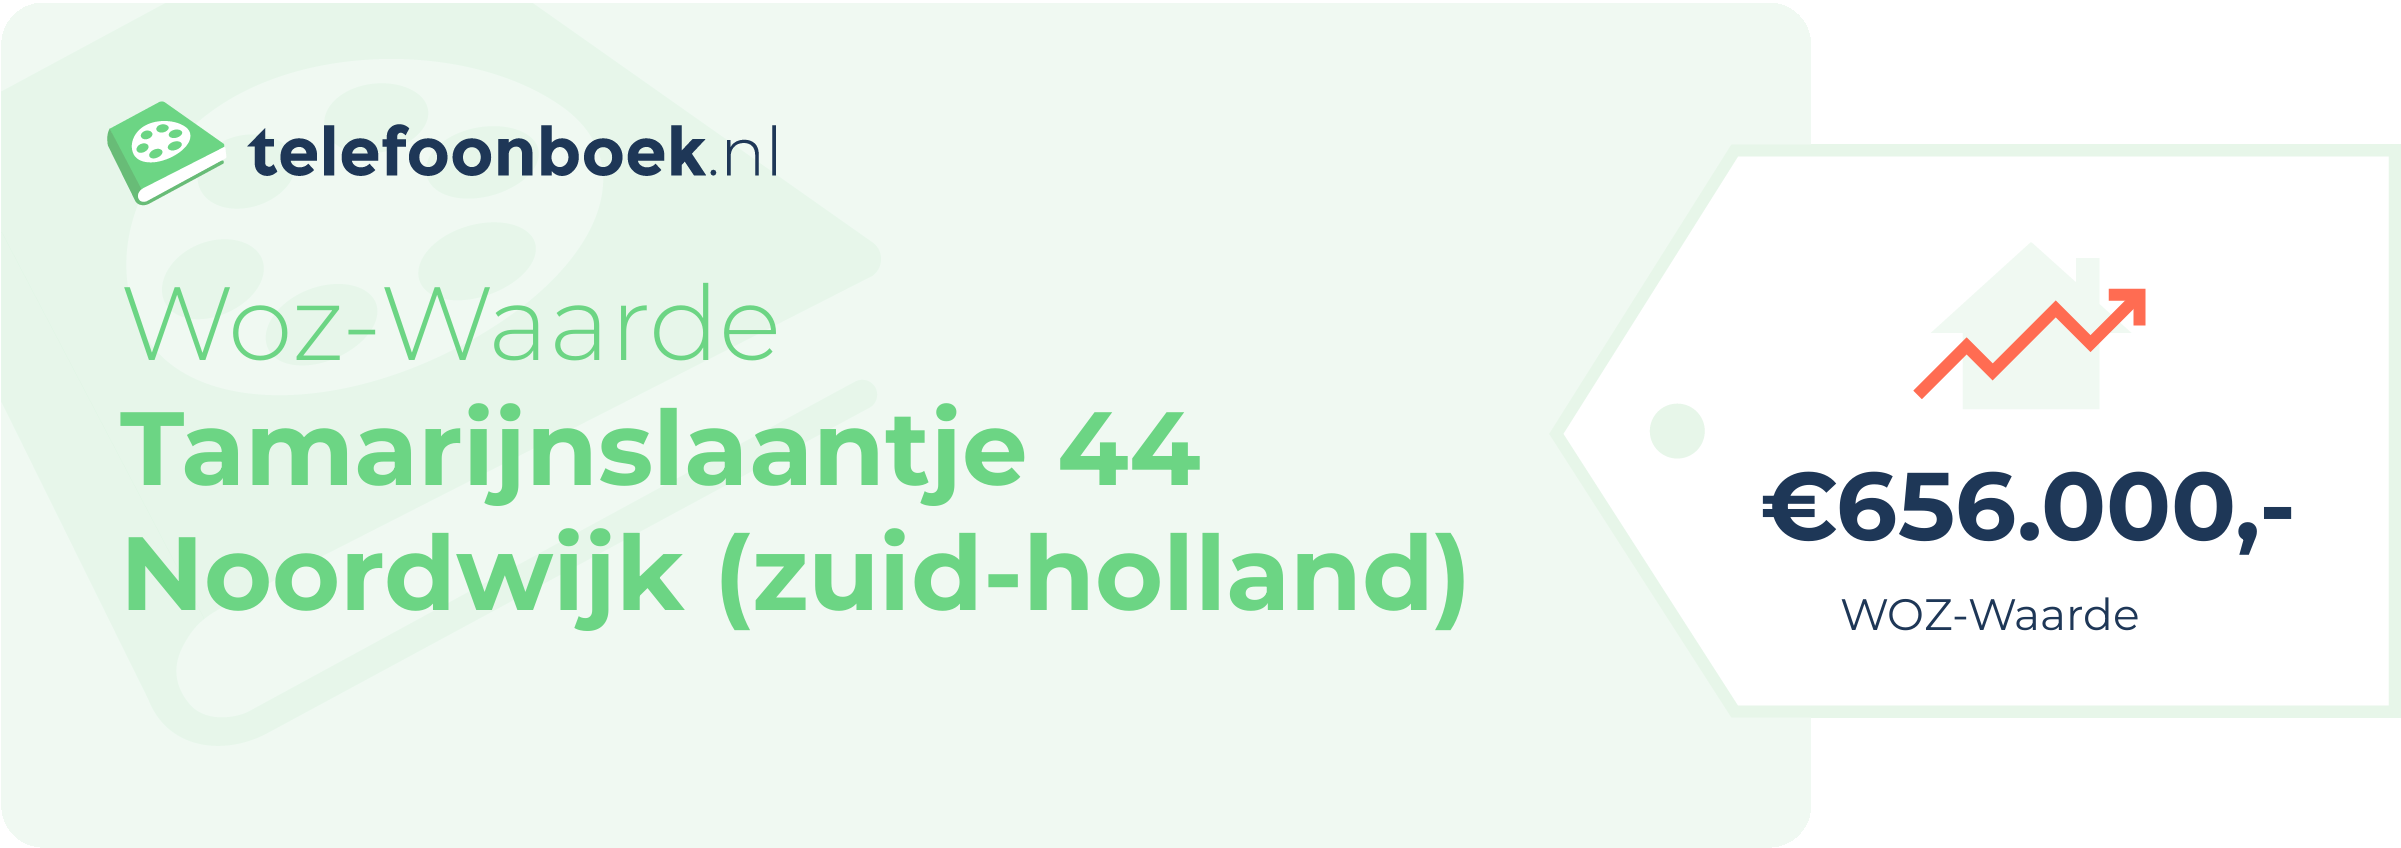 WOZ-waarde Tamarijnslaantje 44 Noordwijk (Zuid-Holland)